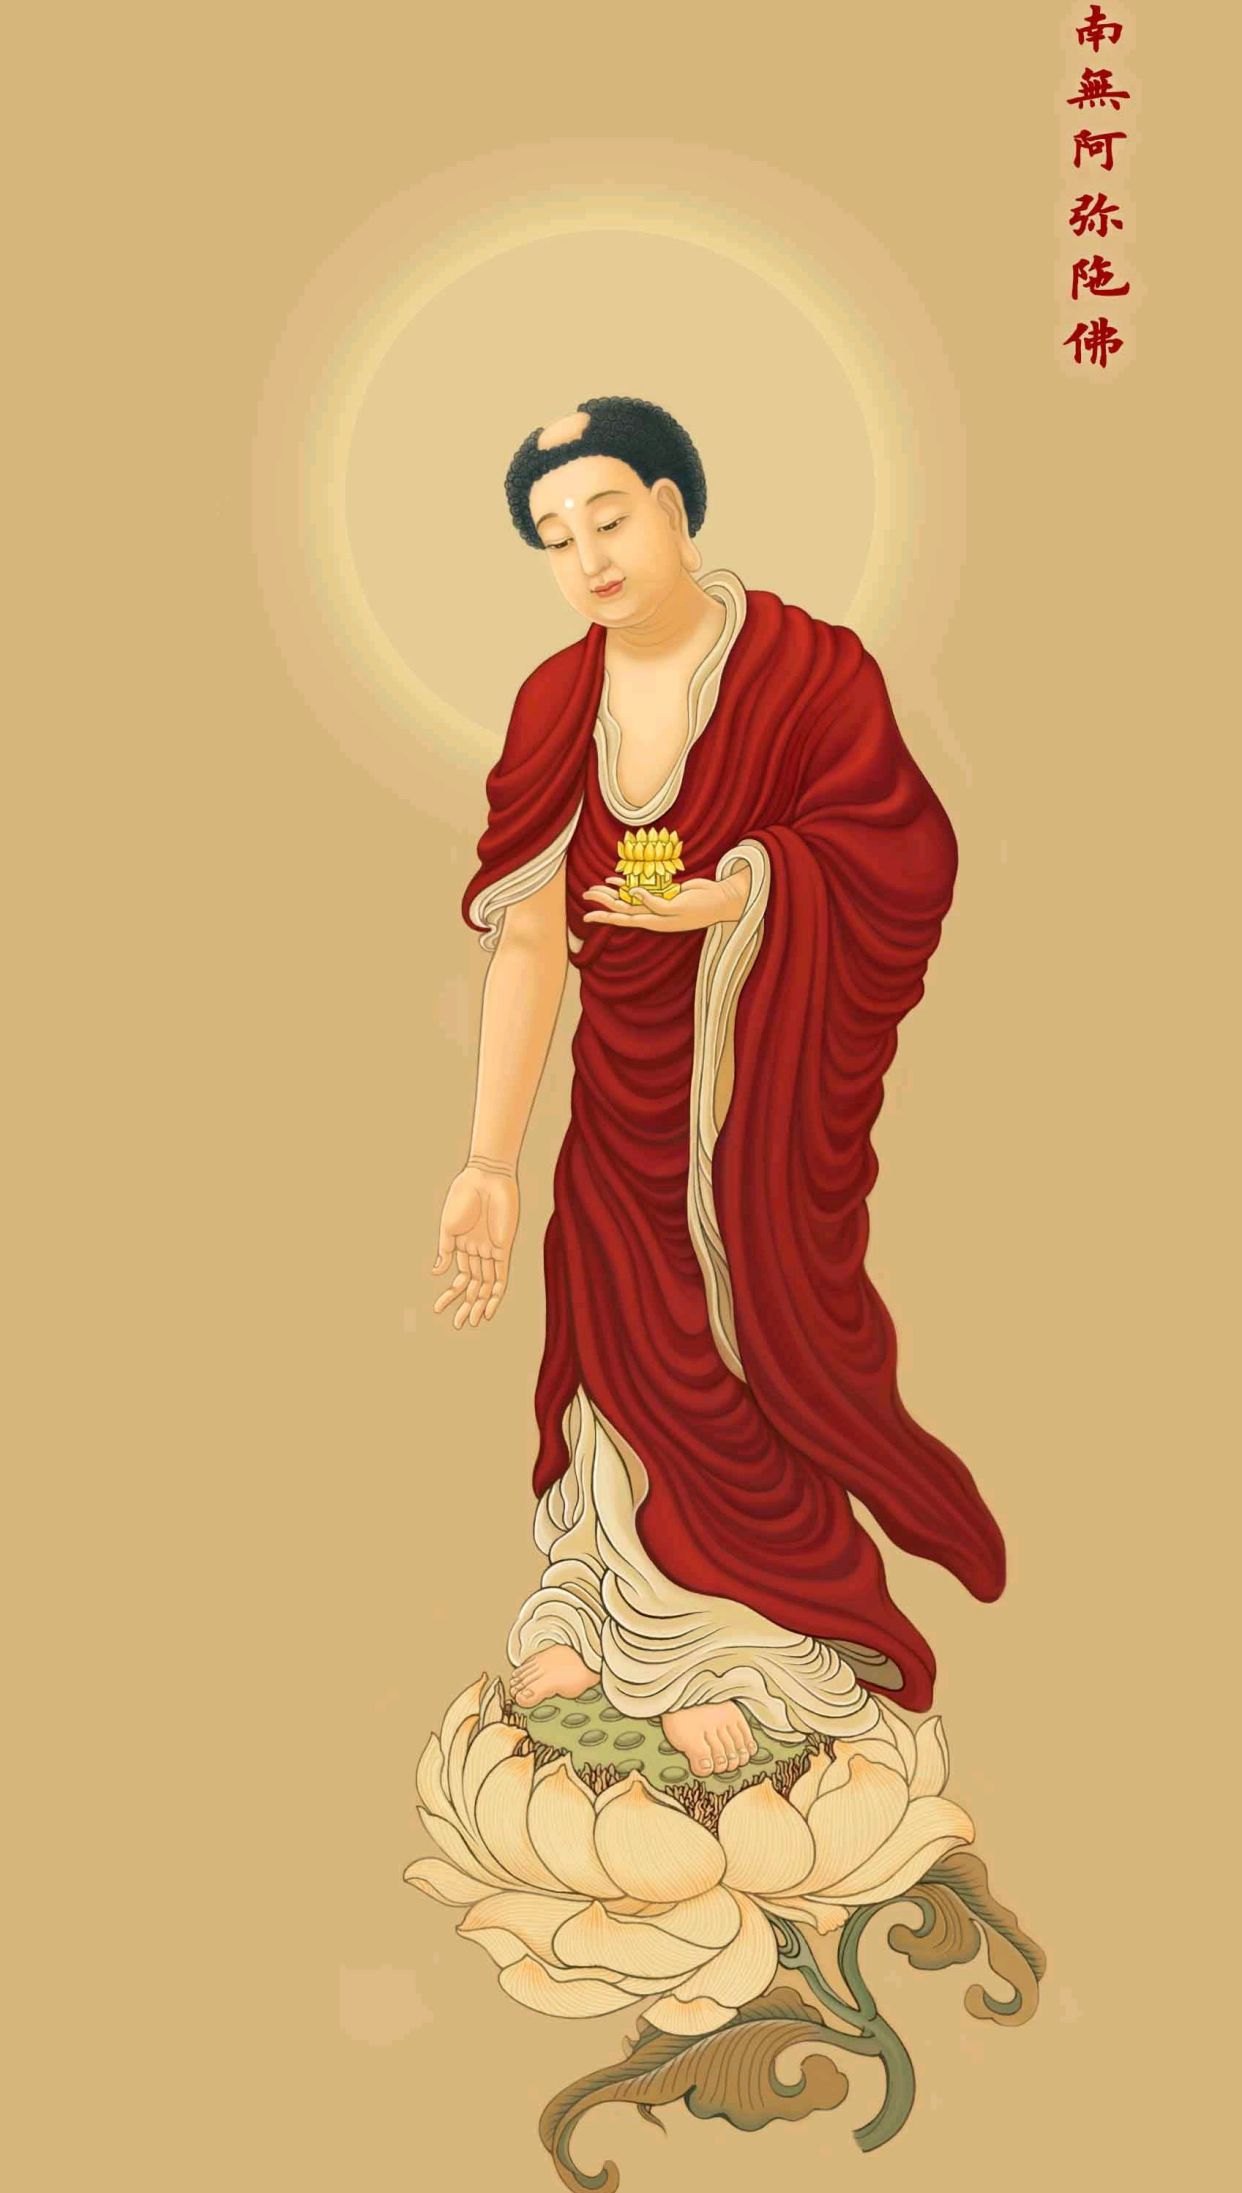 生活观三十:佛教徒见面为什么相互称念阿弥陀佛